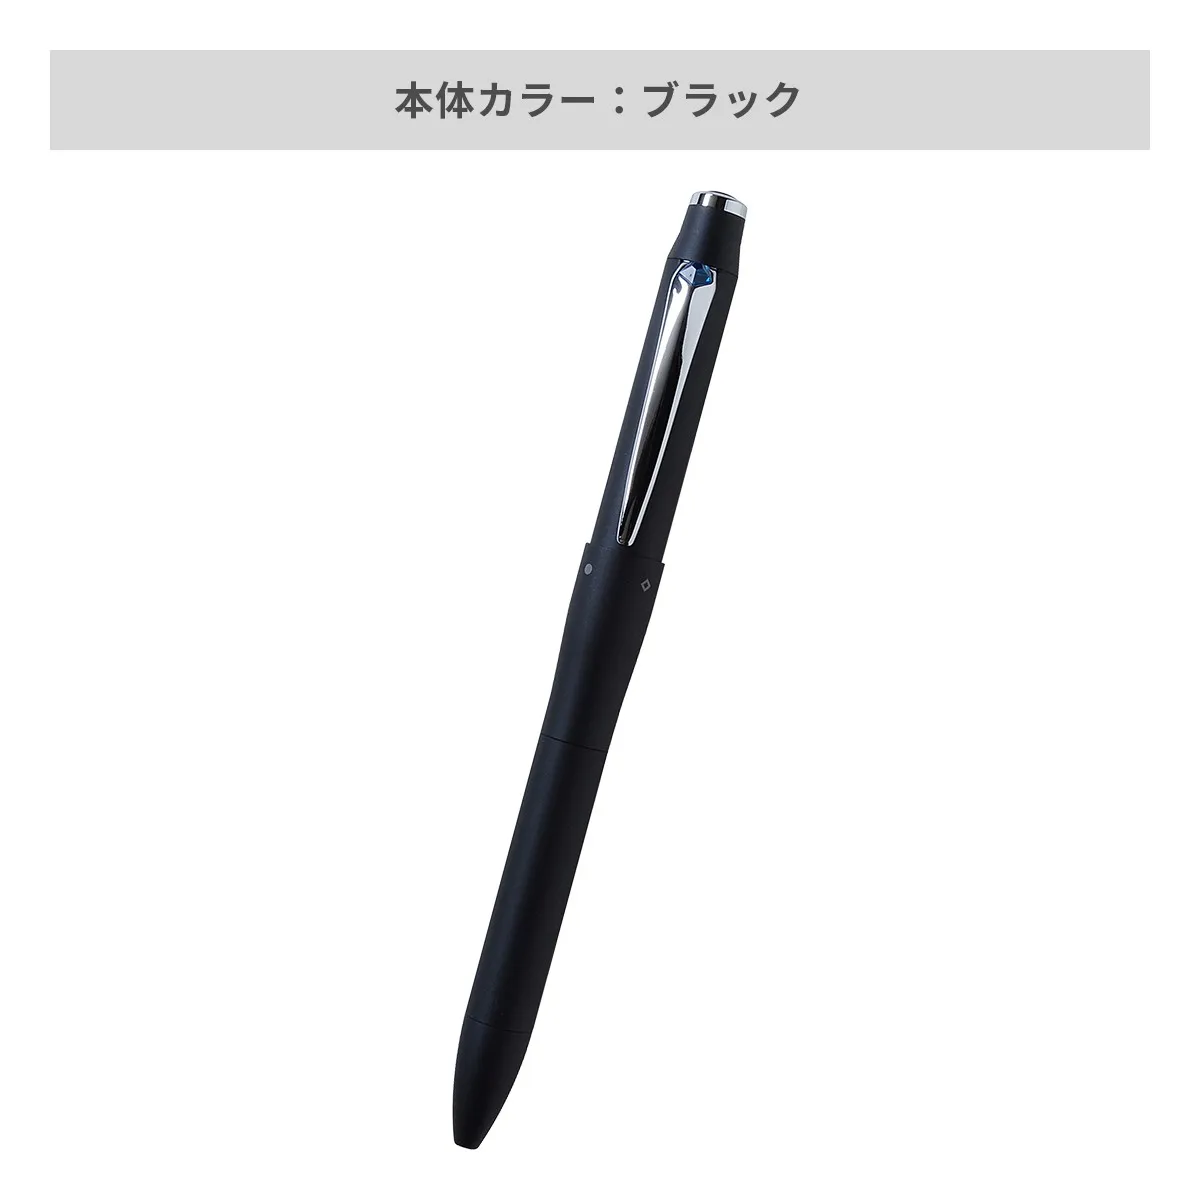 【短納期】三菱鉛筆 ジェットストリーム プライム 多機能ペン 3&1 0.7mm【多機能ペン / レーザー彫刻】 画像3